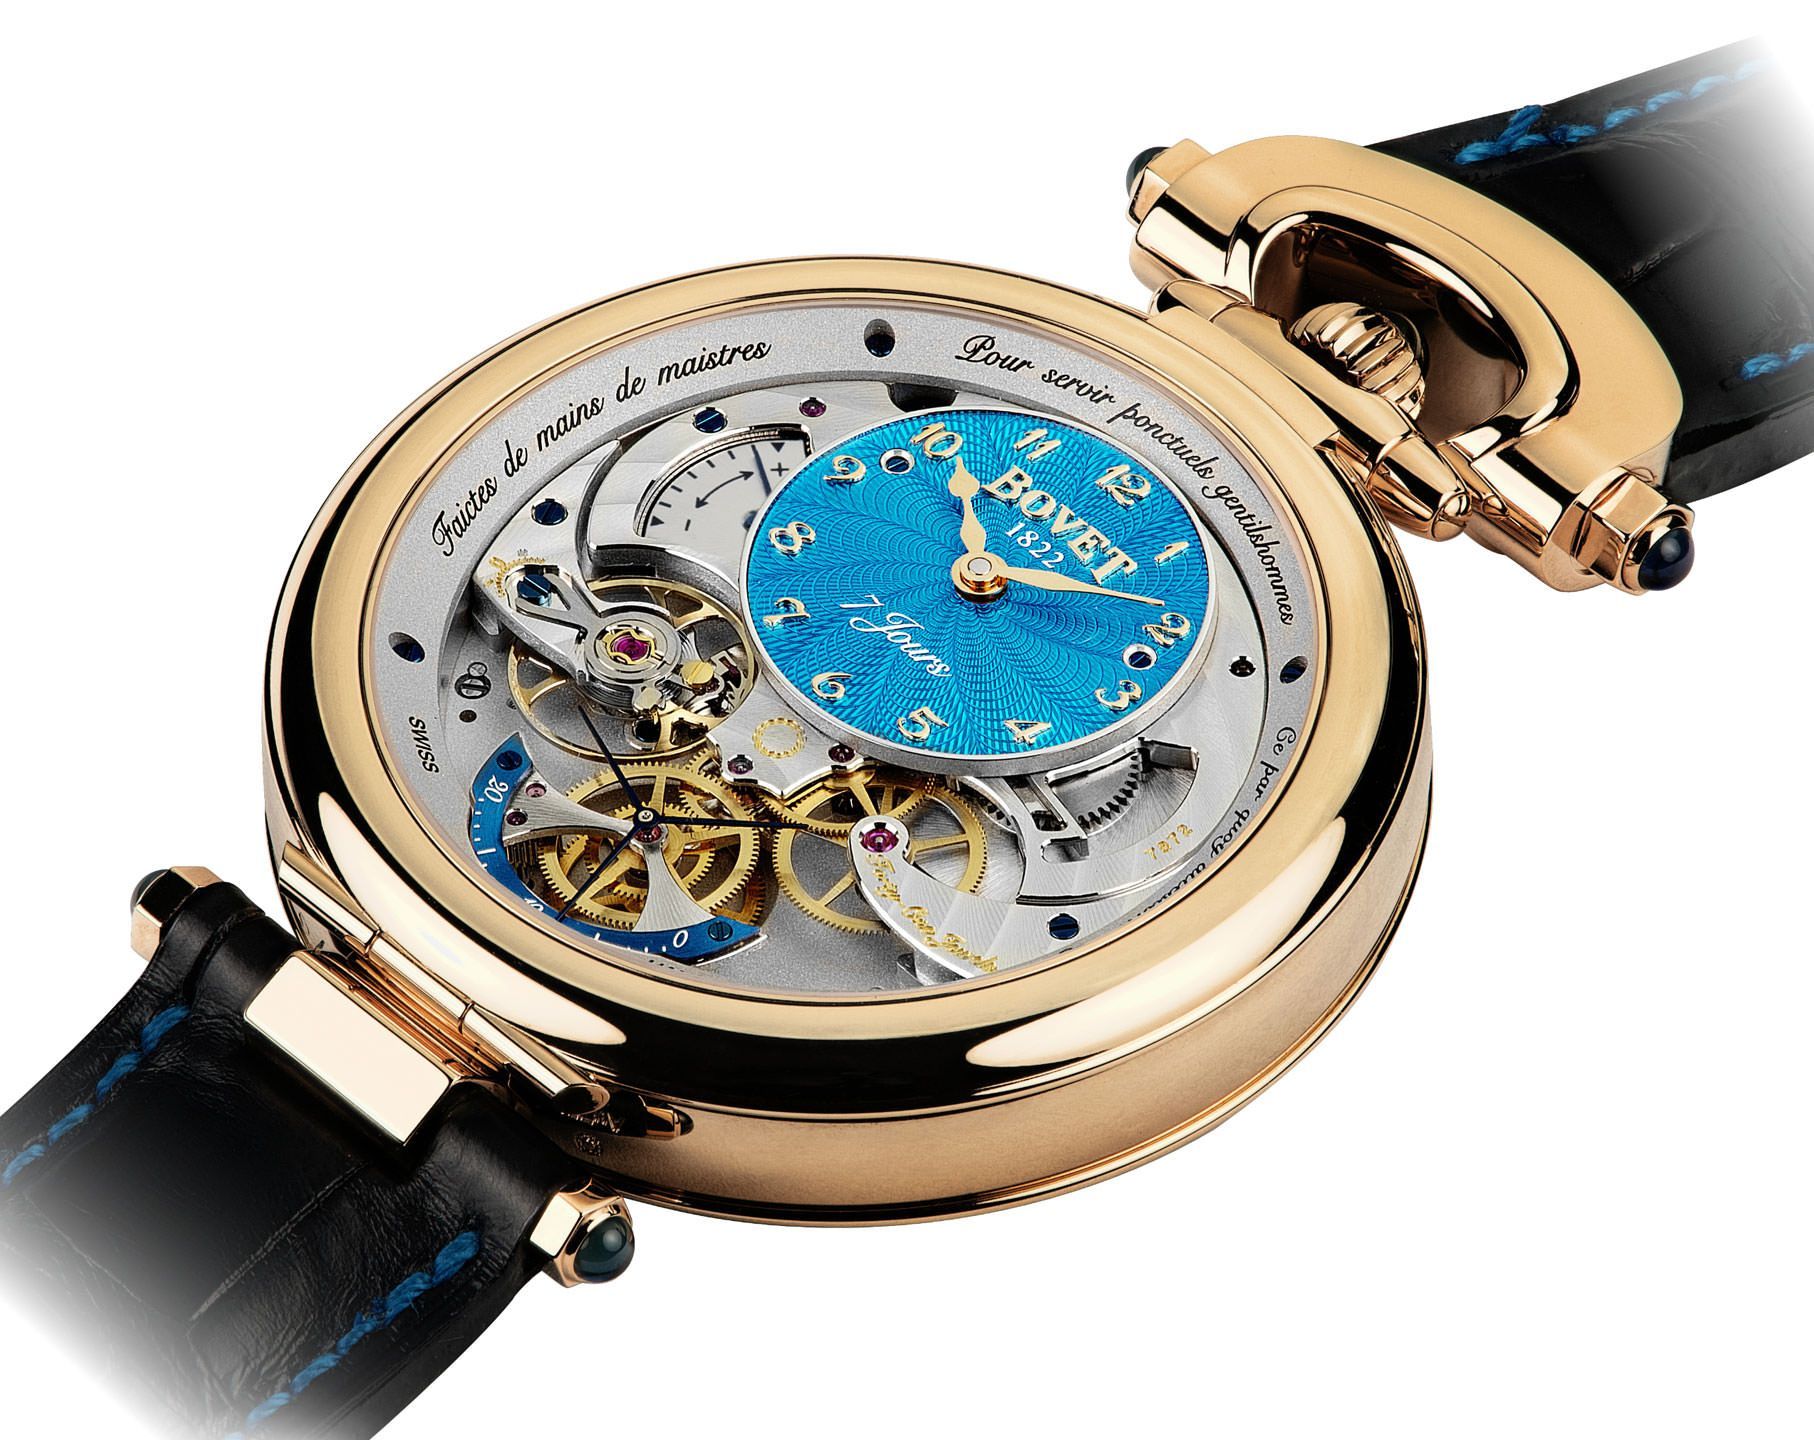 Bovet Monsieur Bovet 43 mm Watch in Turquoise Dial For Men - 5